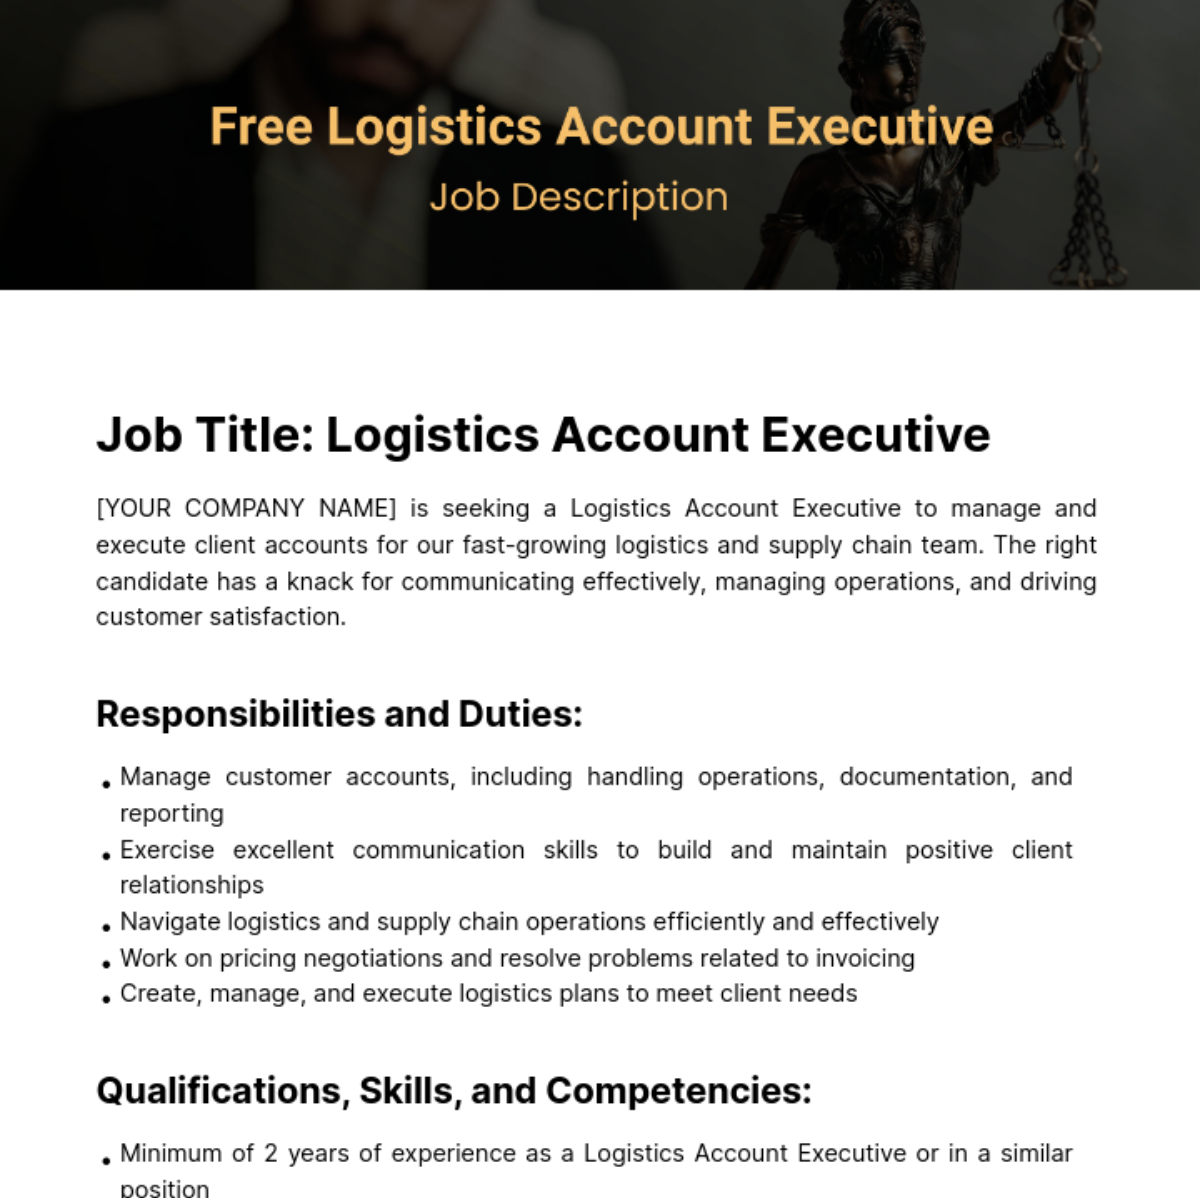 Free Logistics Account Executive Job Description Template